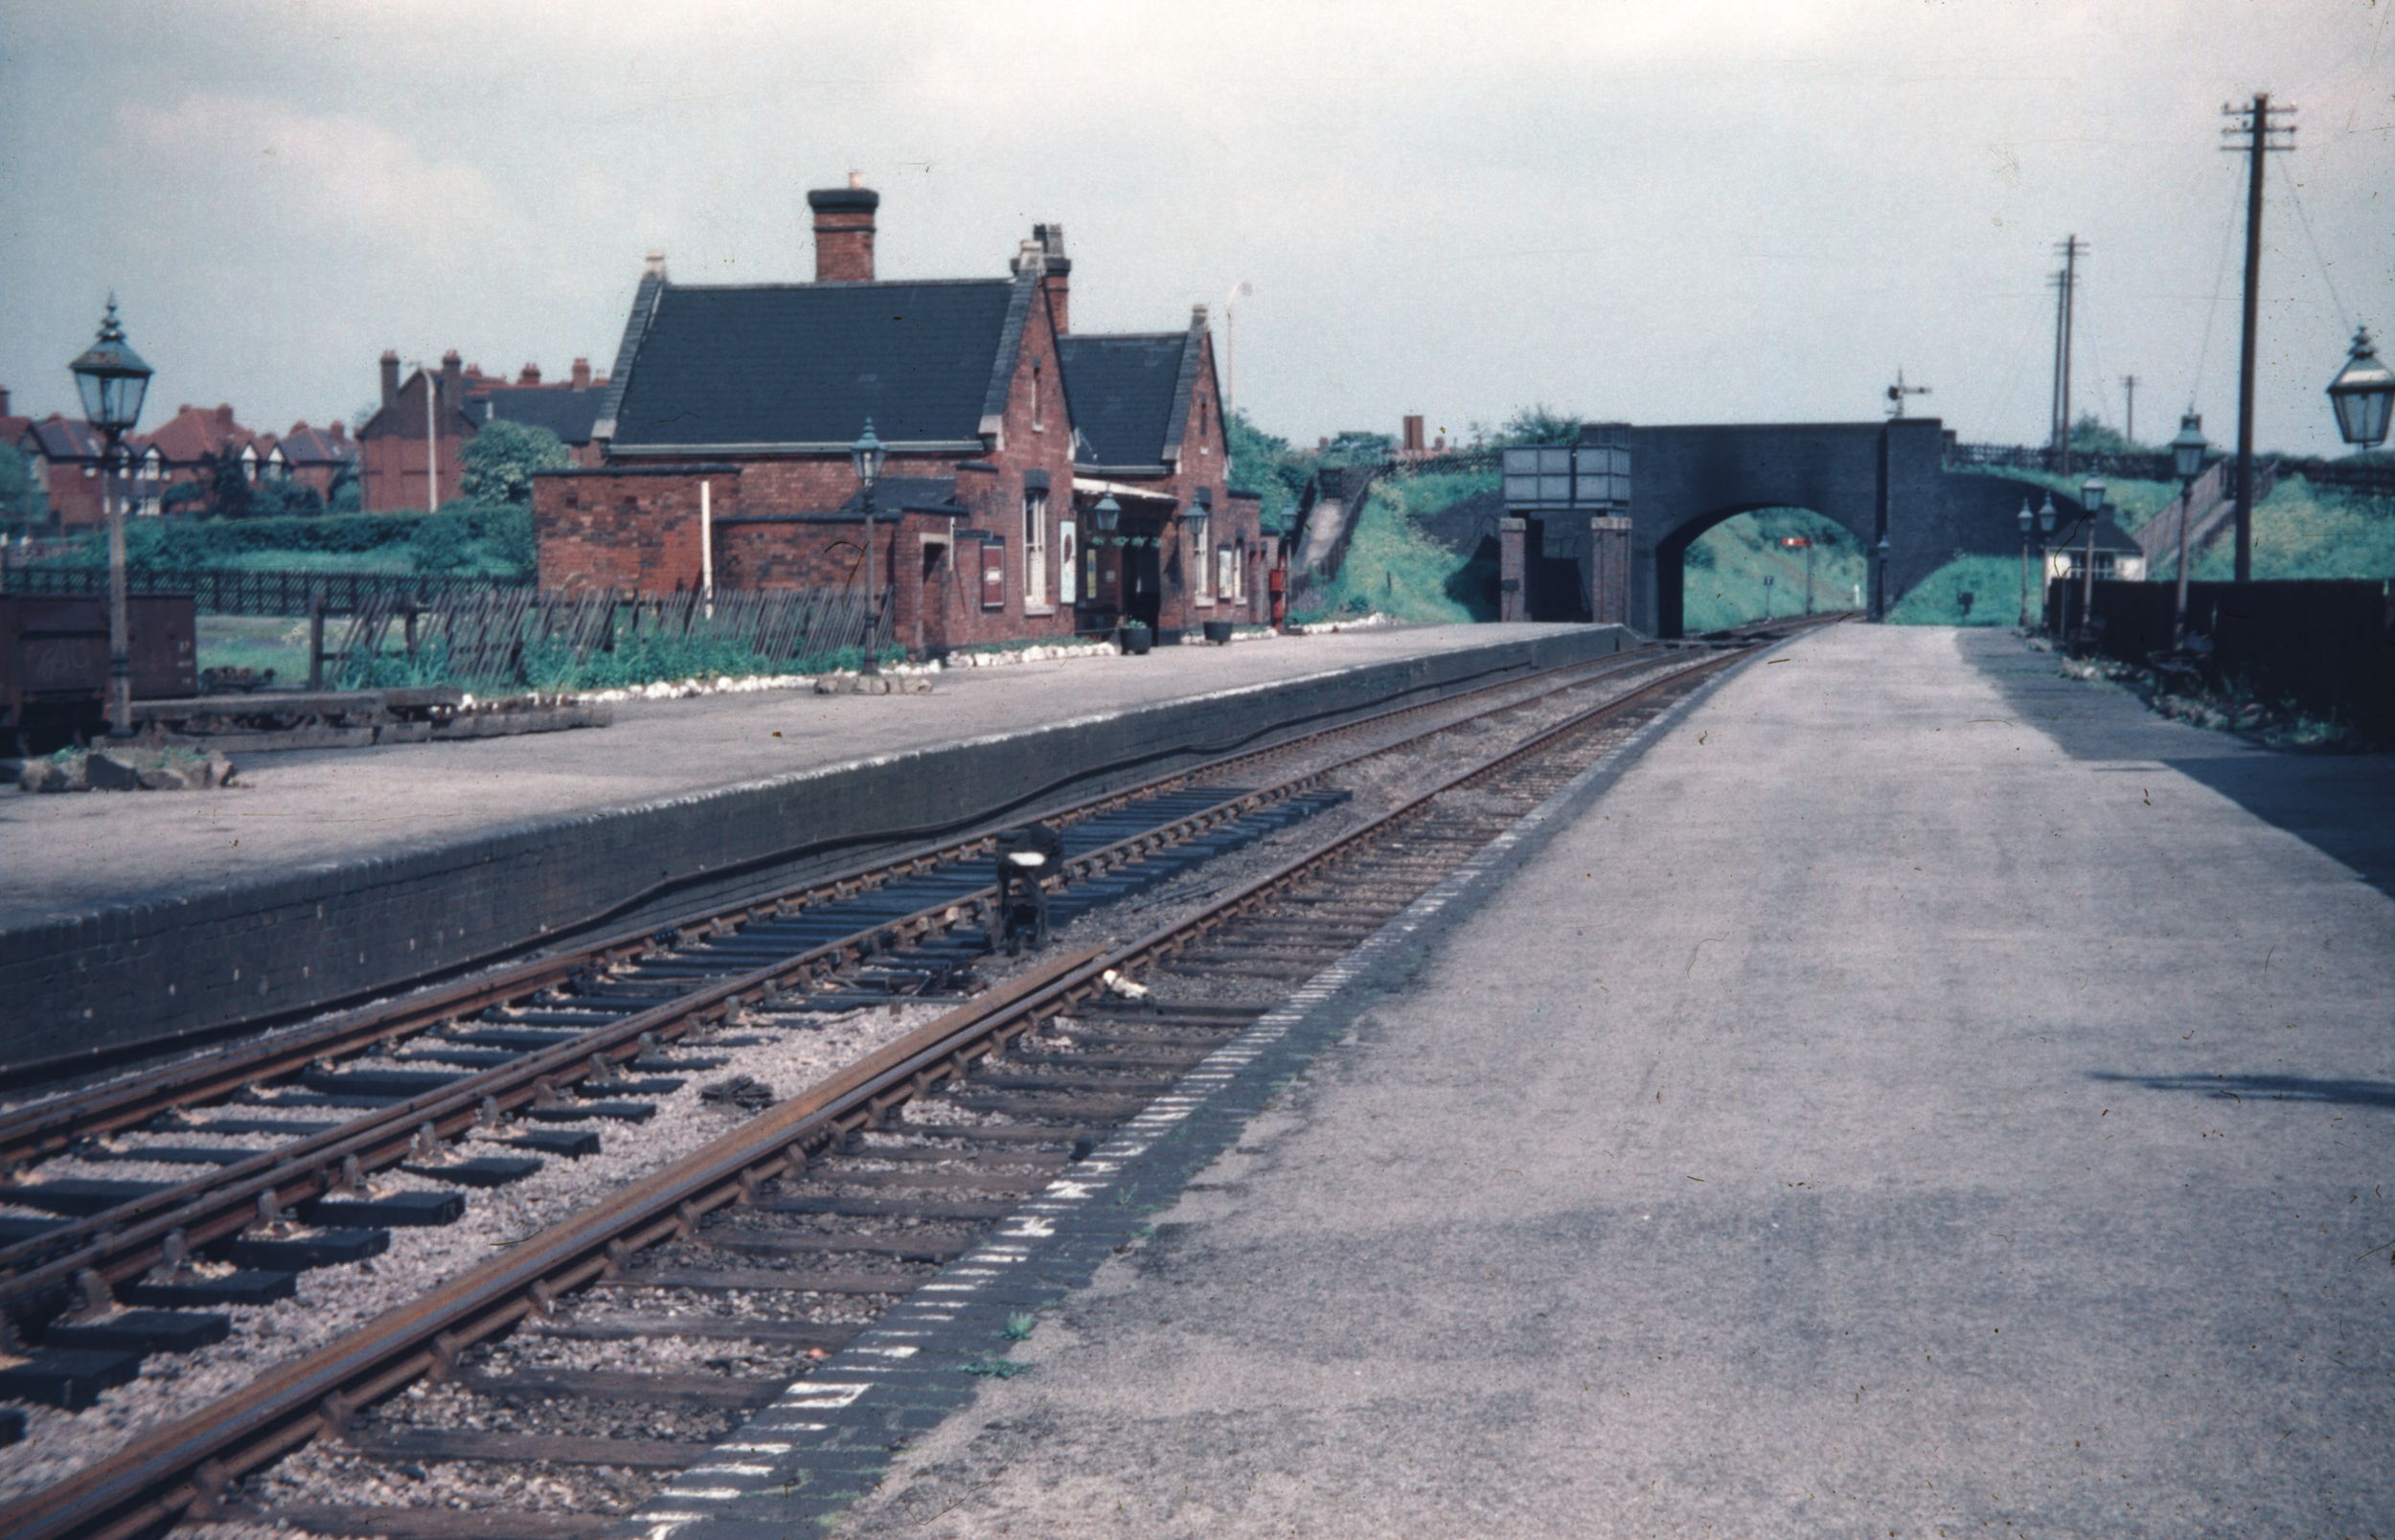 The old Aldridge station